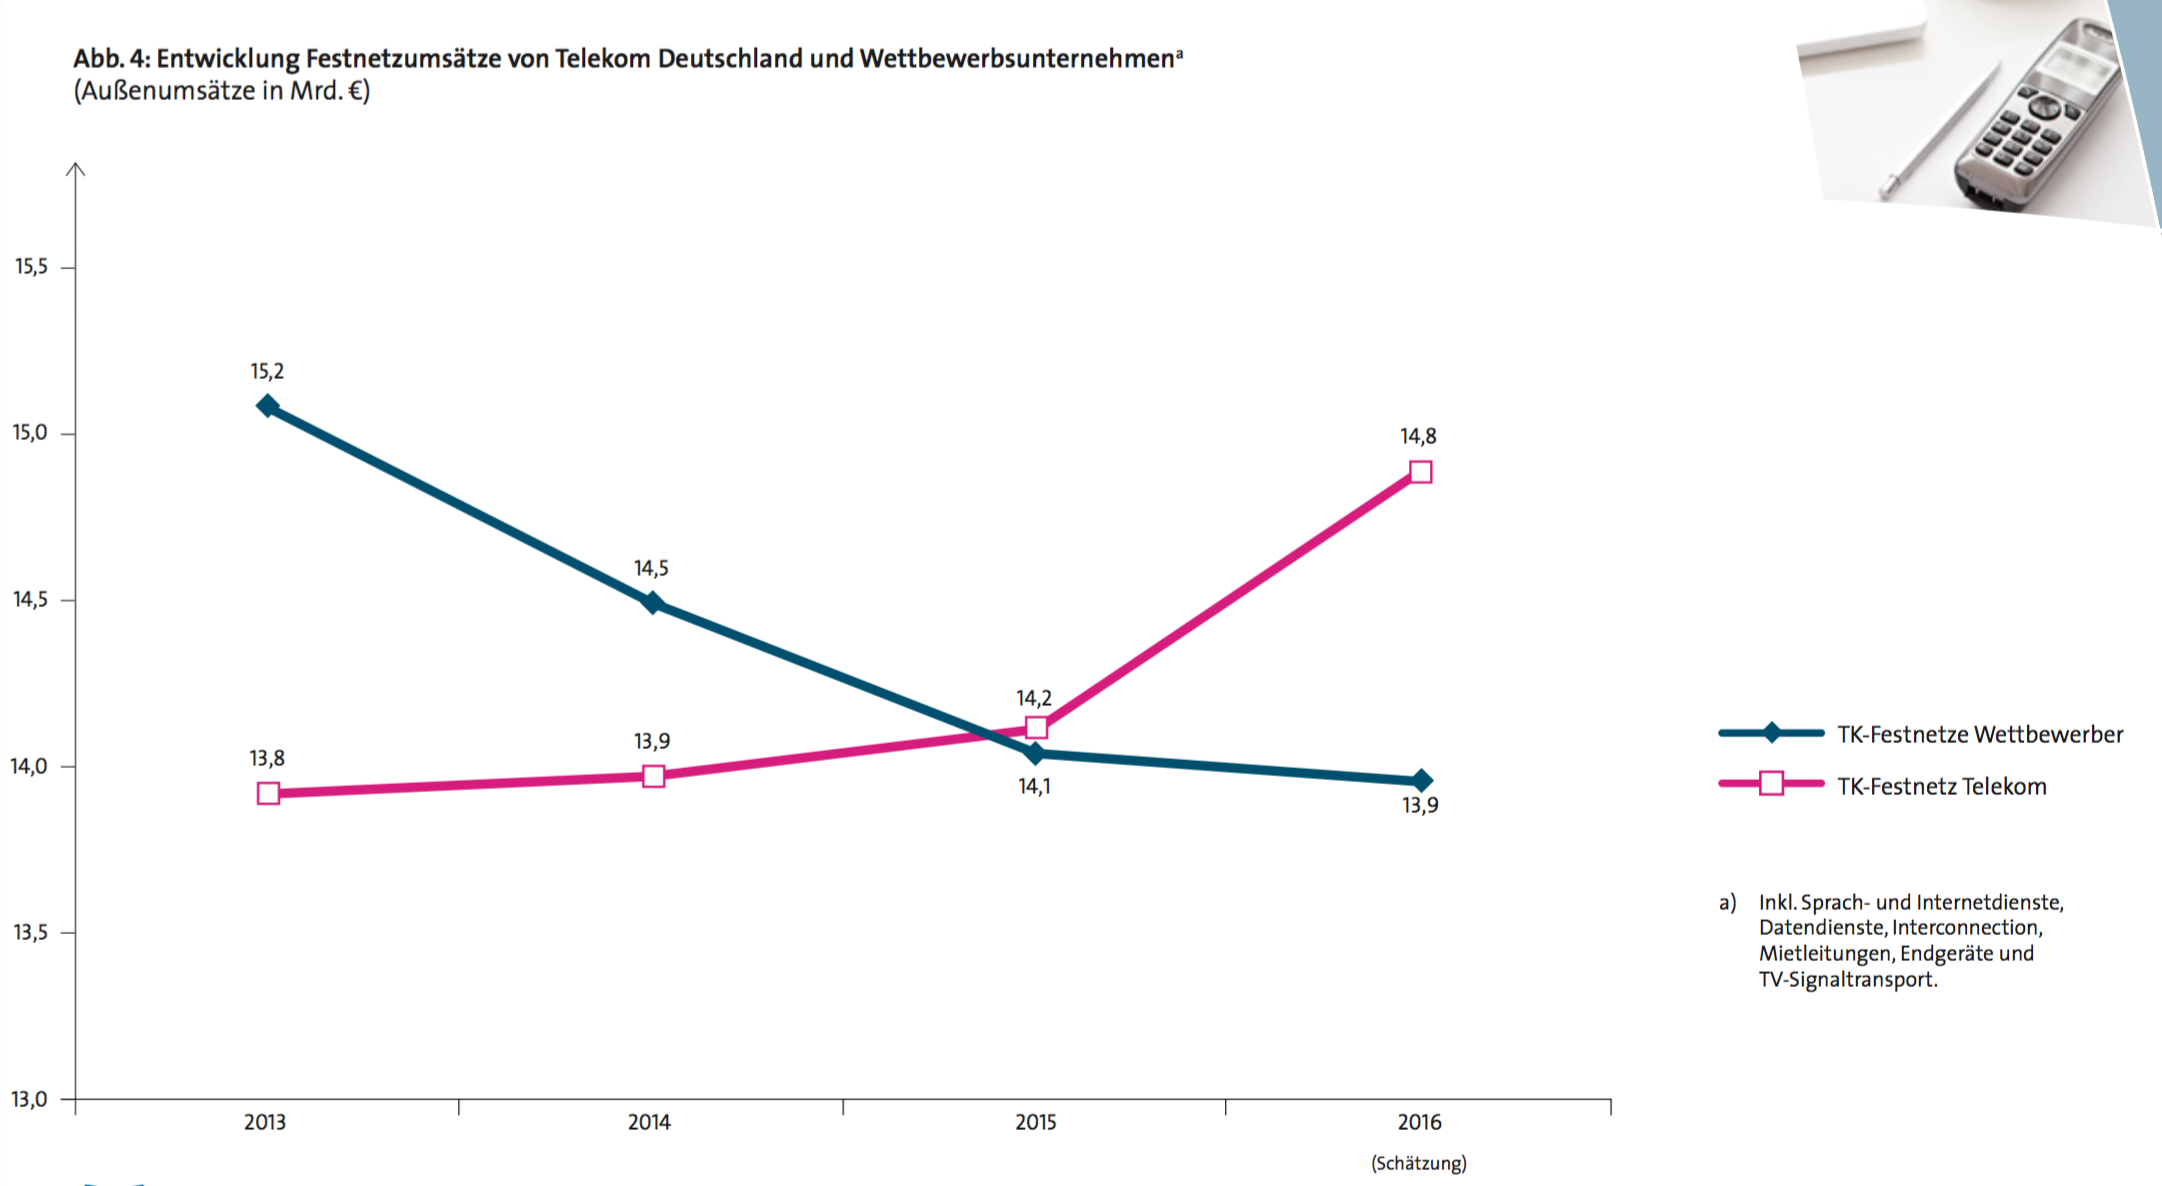 Die Deutsche Telekom legte in den vergangenen Jahren gehörig zu – auf Kosten der Konkurrenz. (Quelle: Vatm/Dialog Consult)